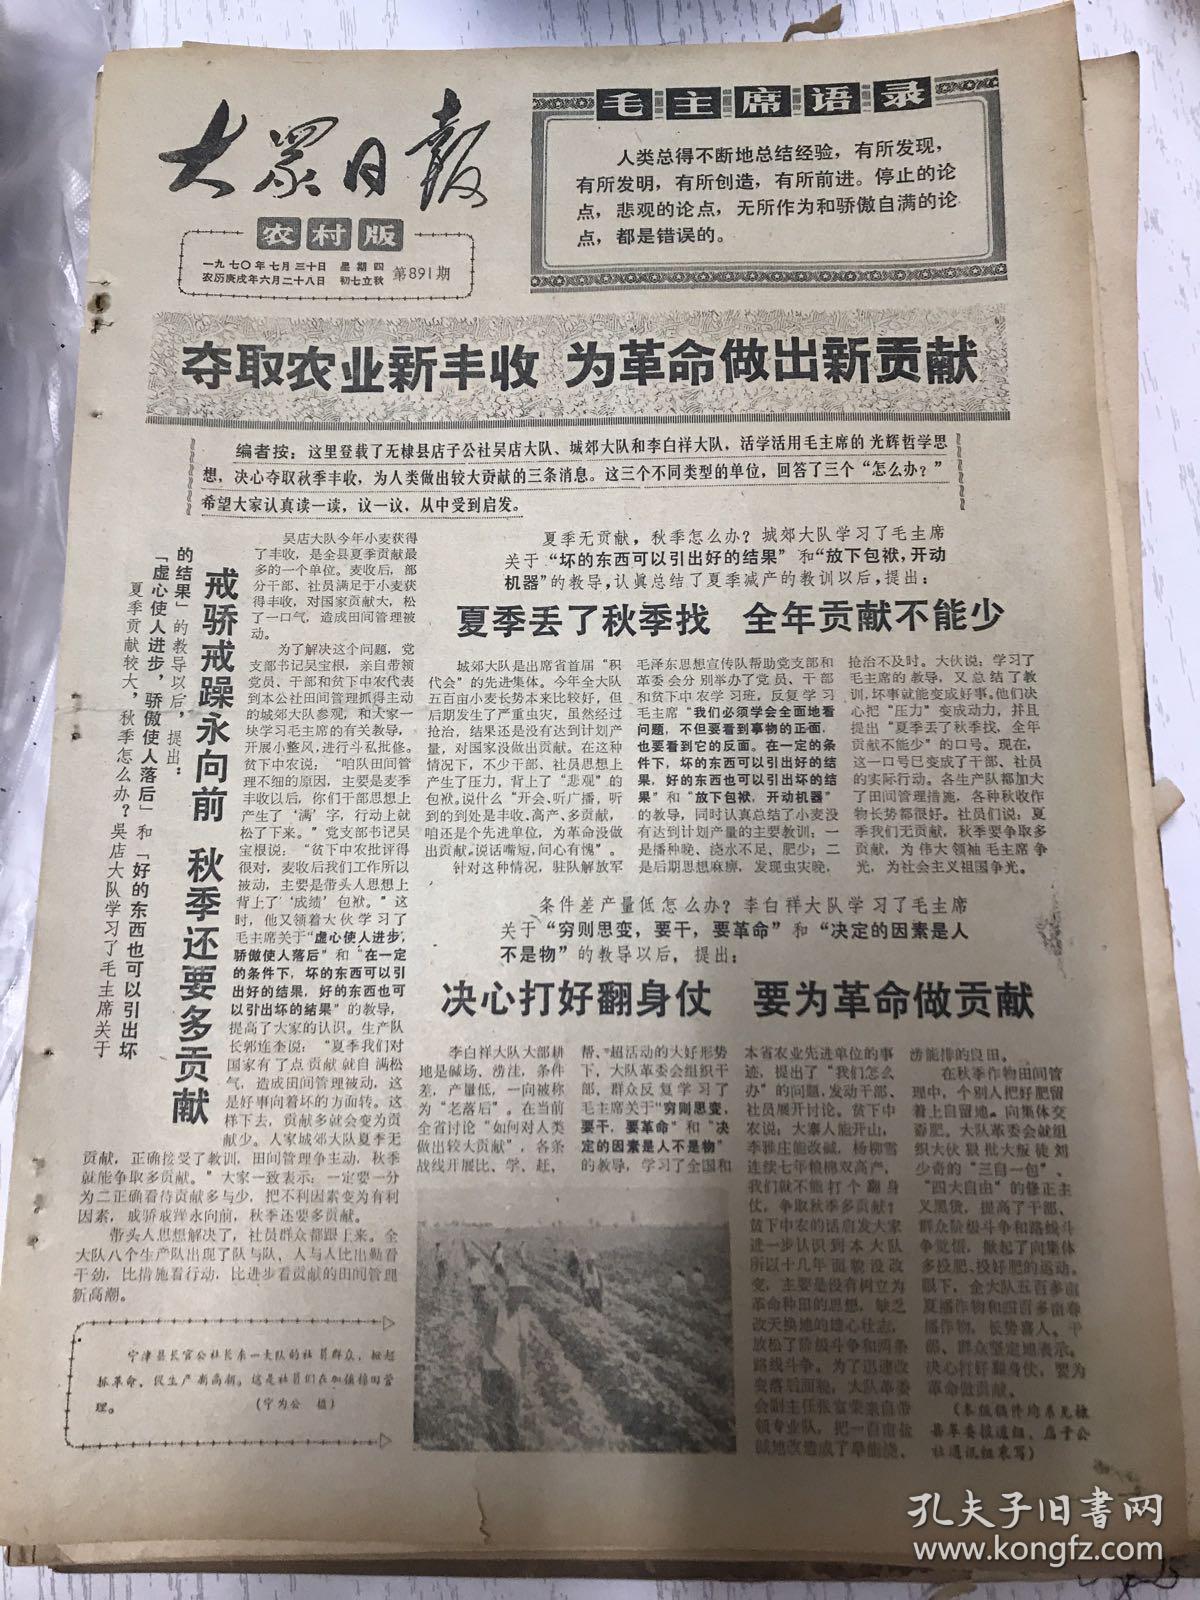 大众日报农村版1970年7月30日(8开四版) 重视读报用报;全面贡献不能少